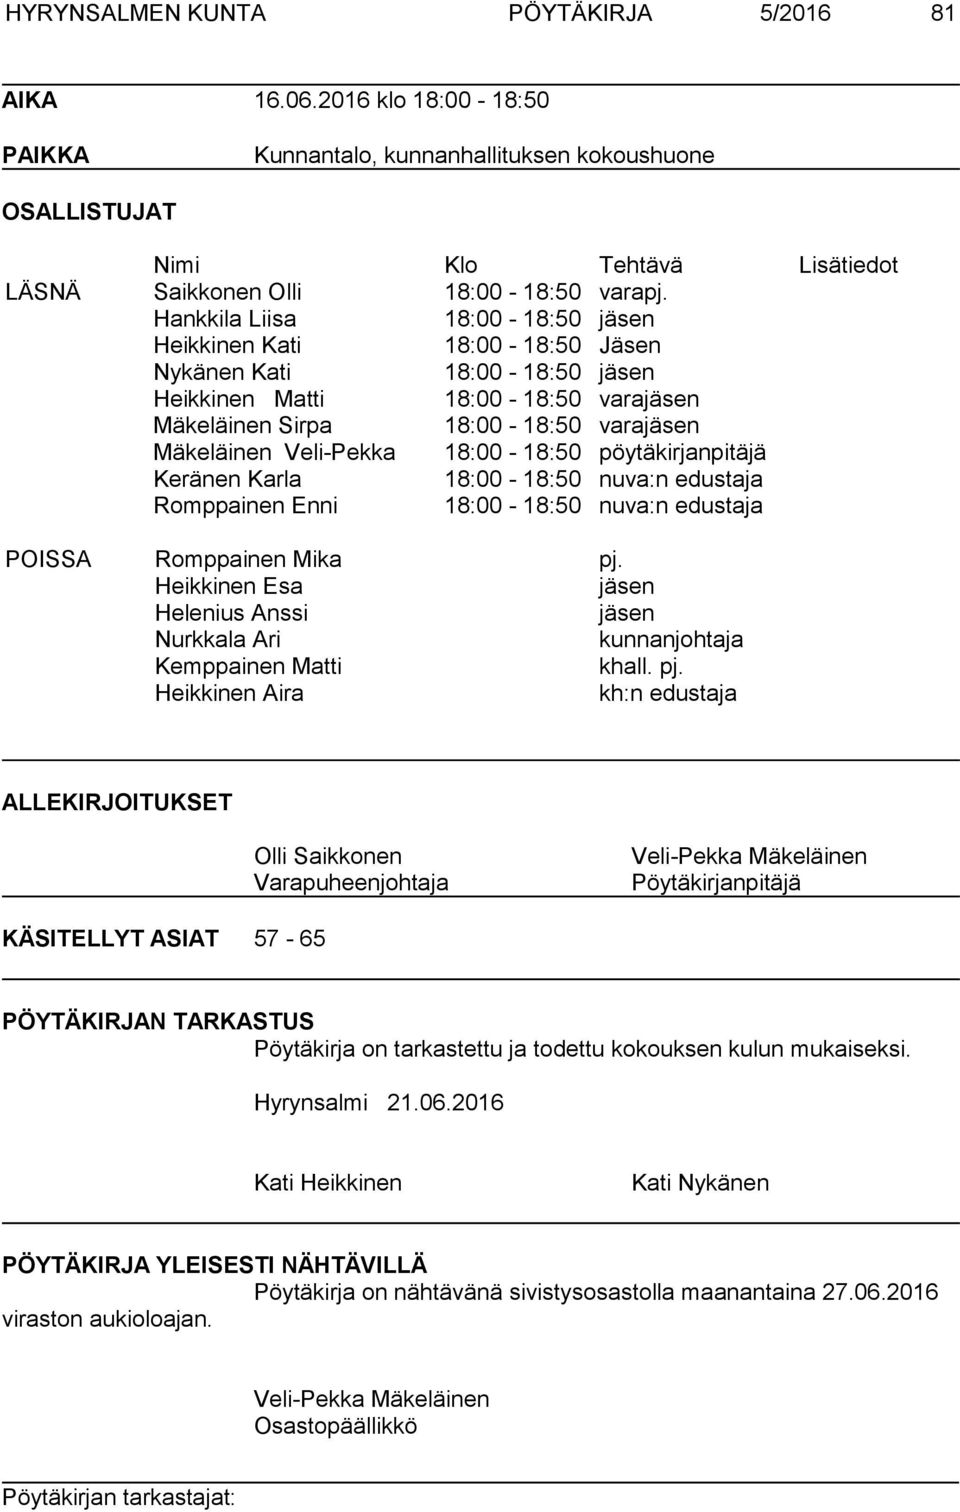 Hankkila Liisa 18:00-18:50 jäsen Heikkinen Kati 18:00-18:50 Jäsen Nykänen Kati 18:00-18:50 jäsen Heikkinen Matti 18:00-18:50 varajäsen Mäkeläinen Sirpa 18:00-18:50 varajäsen Mäkeläinen Veli-Pekka